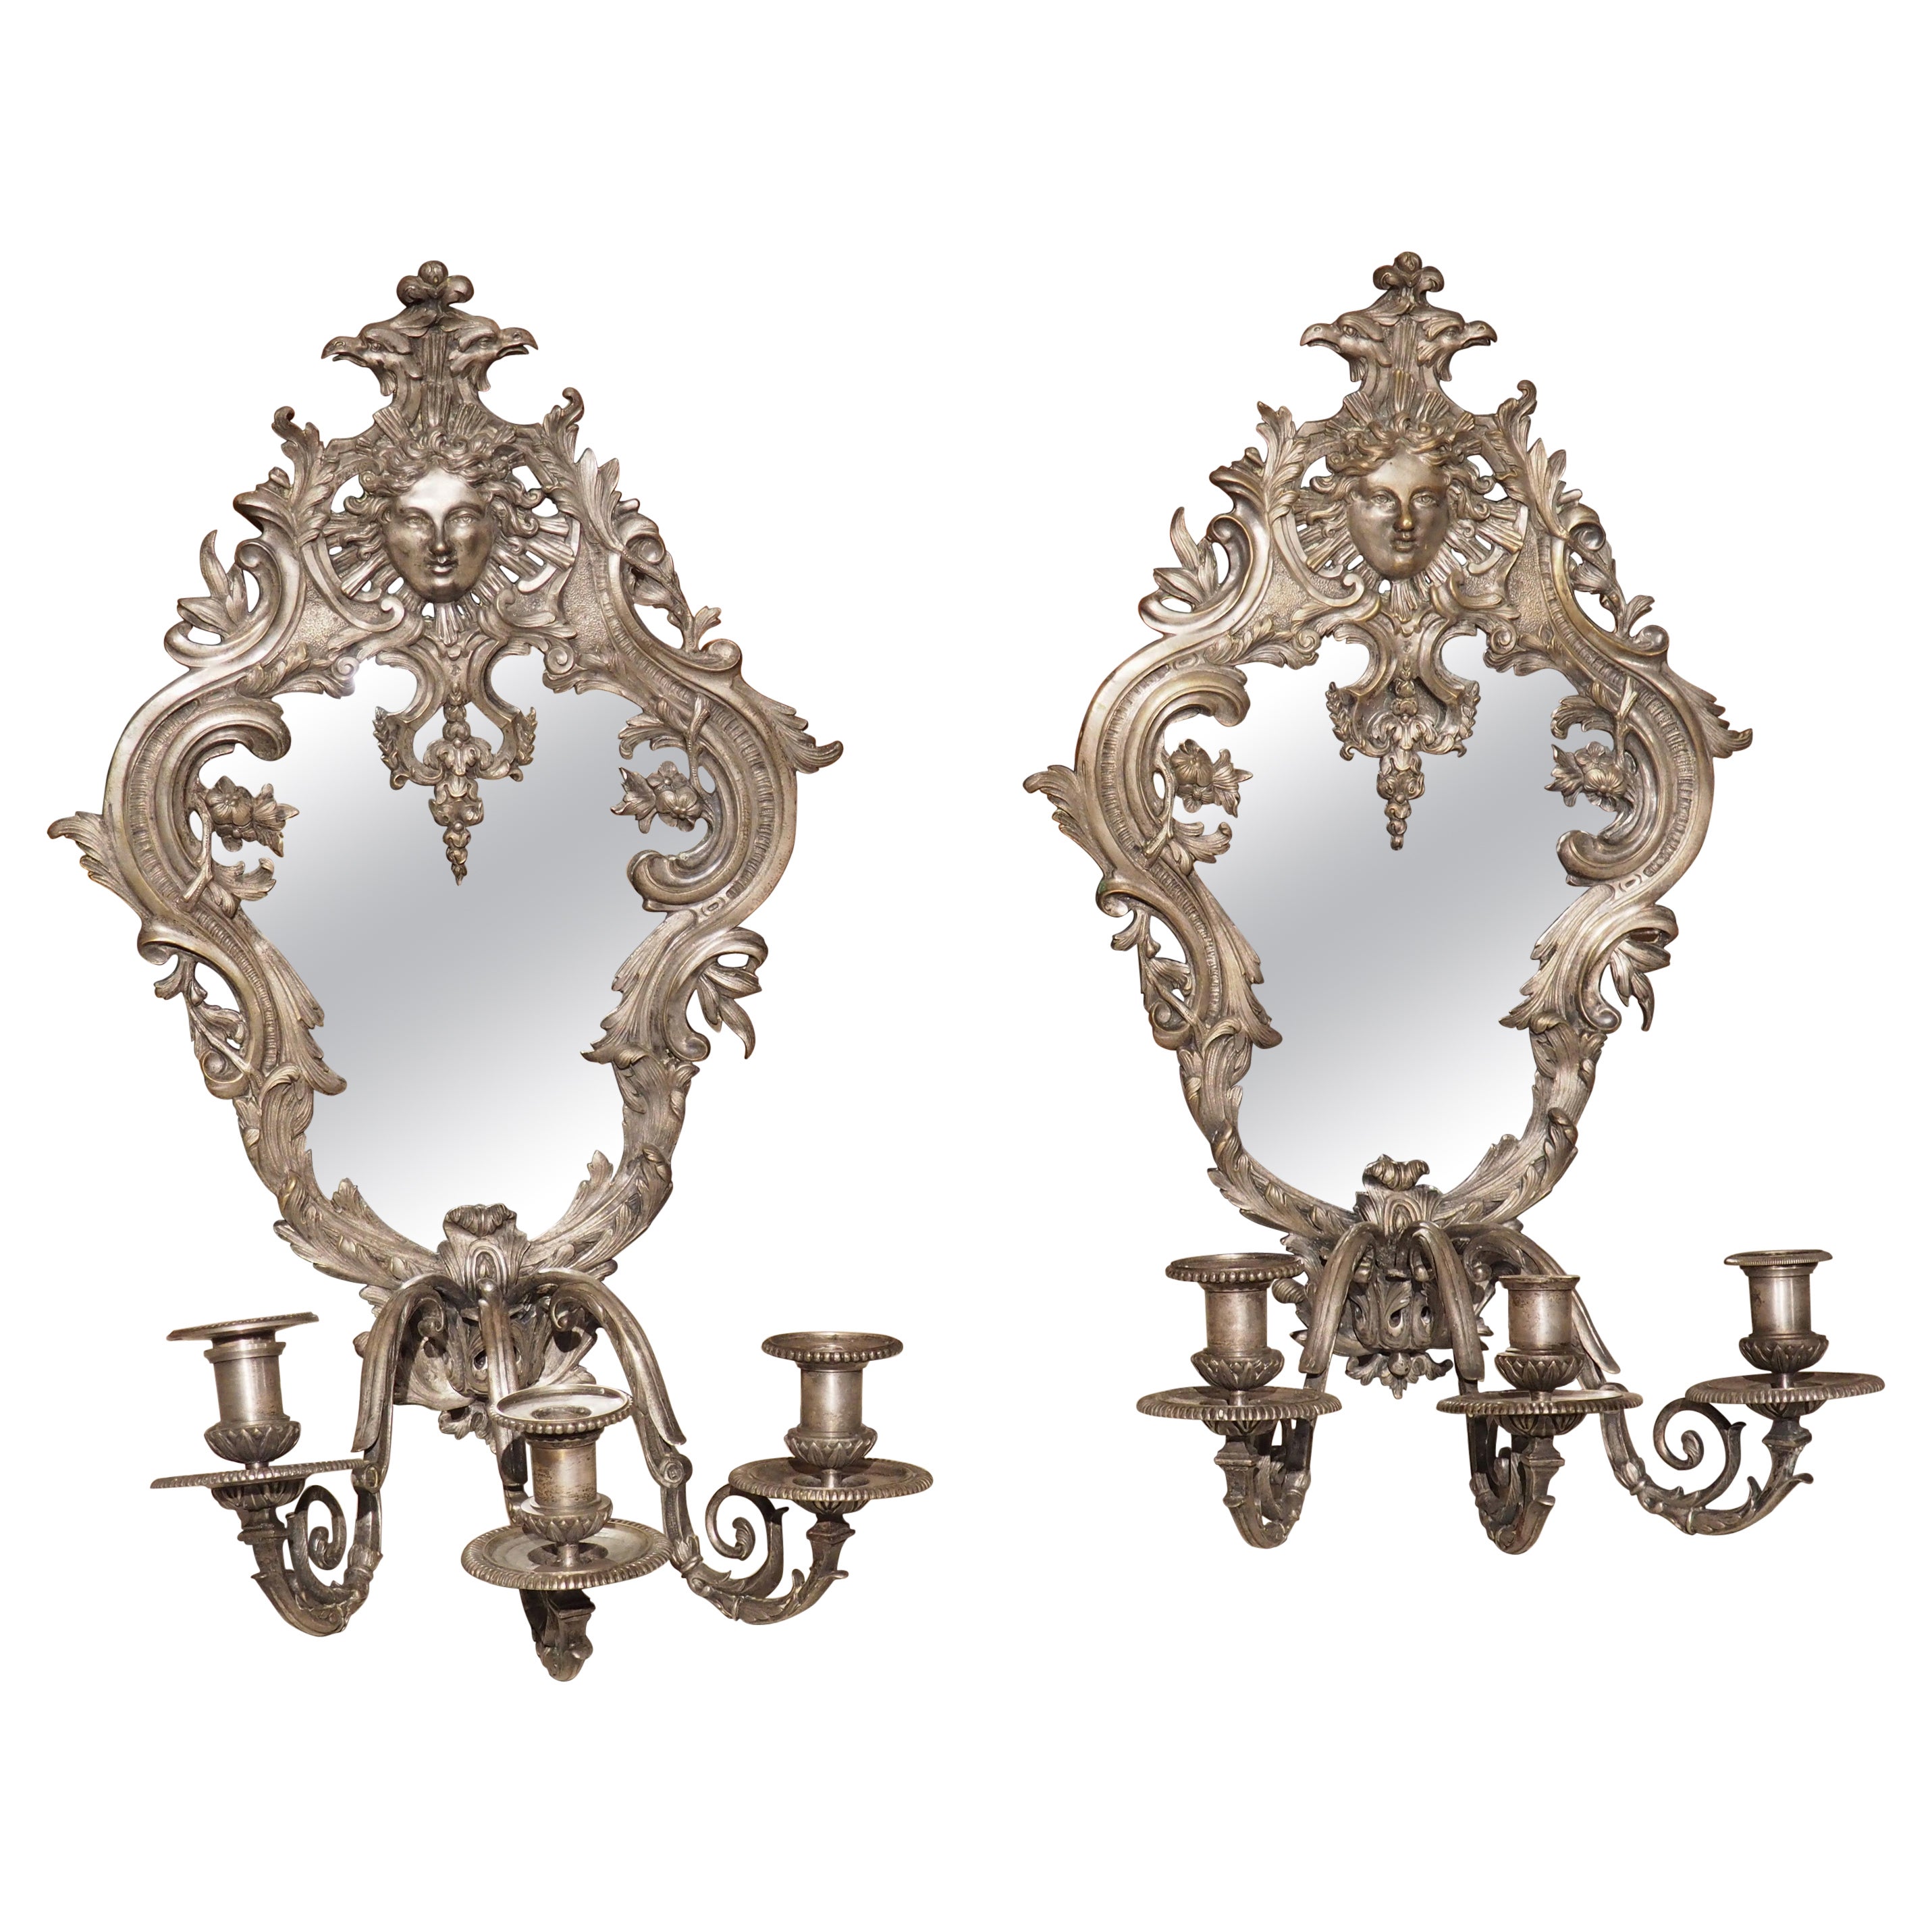 Paire d'appliques à miroir en bronze argenté de style Régence datant de 1850 et provenant de France